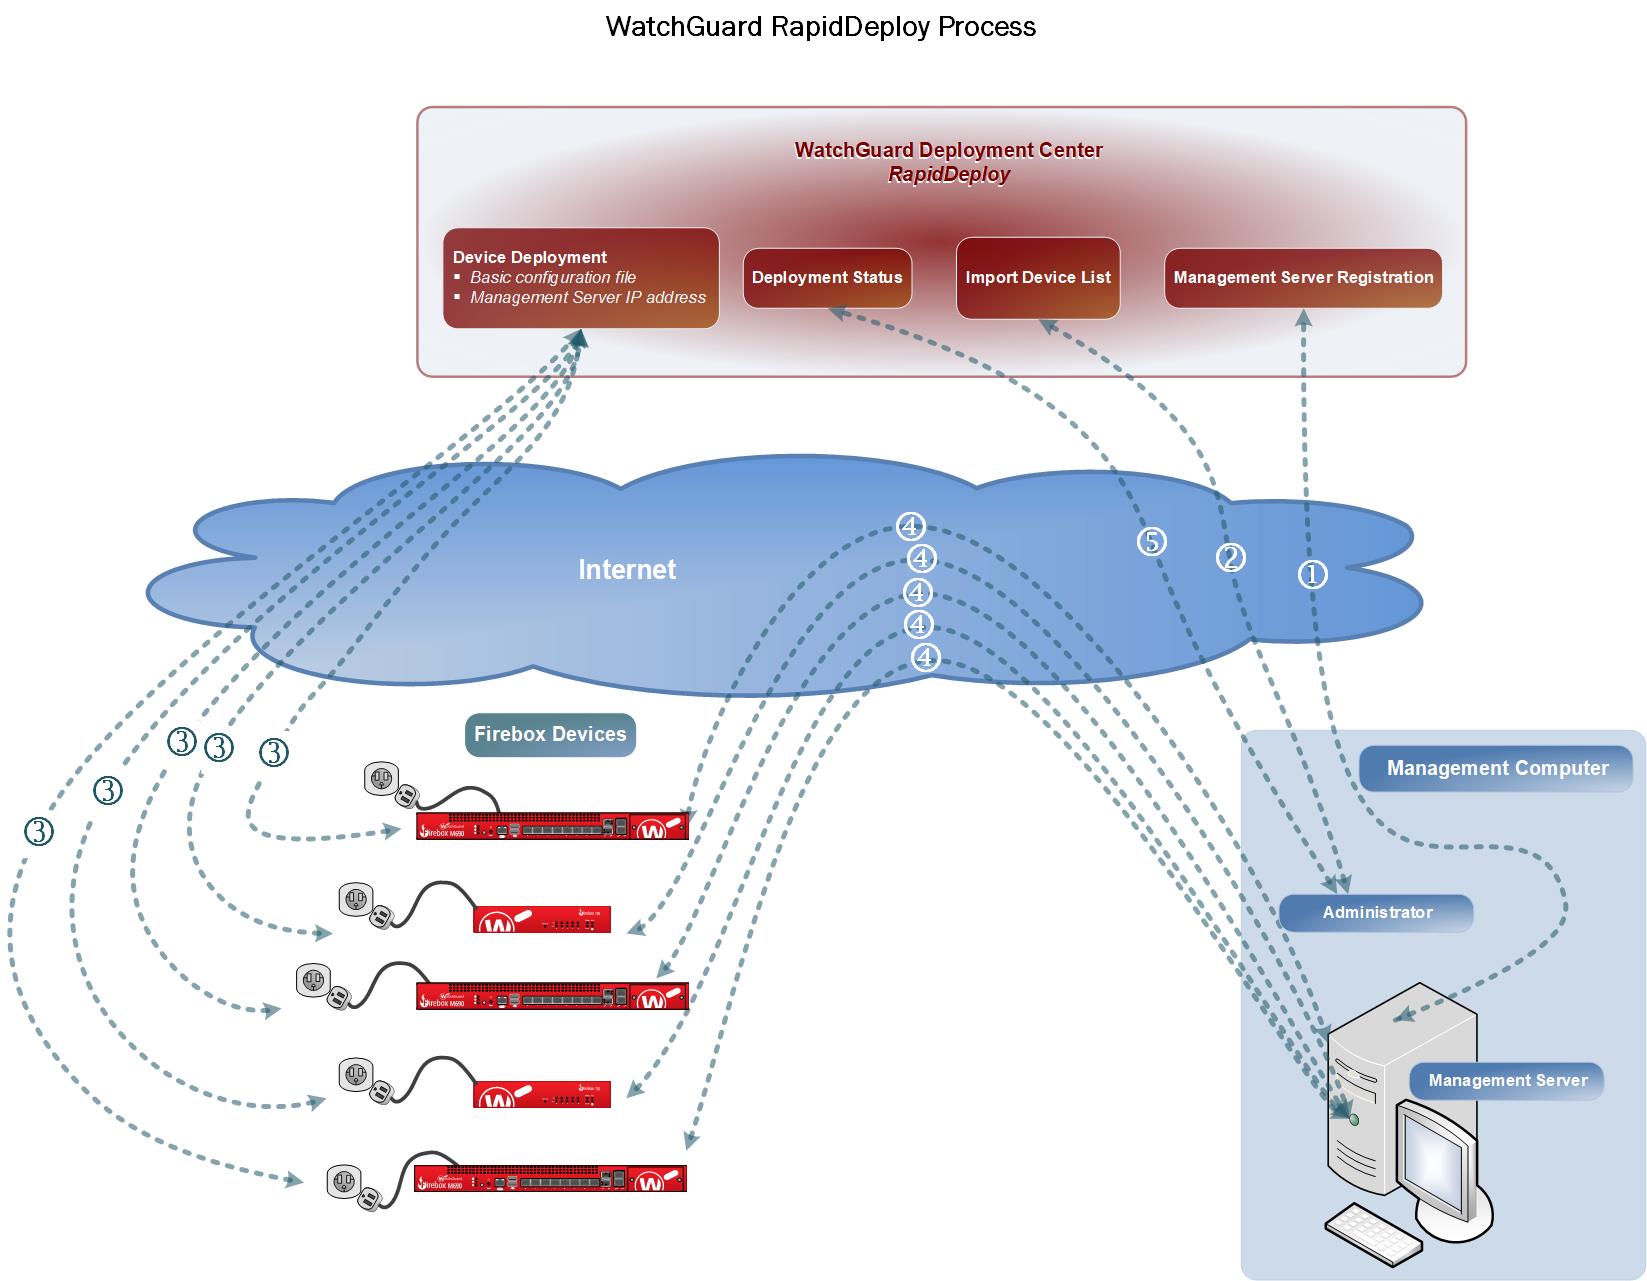 WatchGuard RapidDeploy process diagram